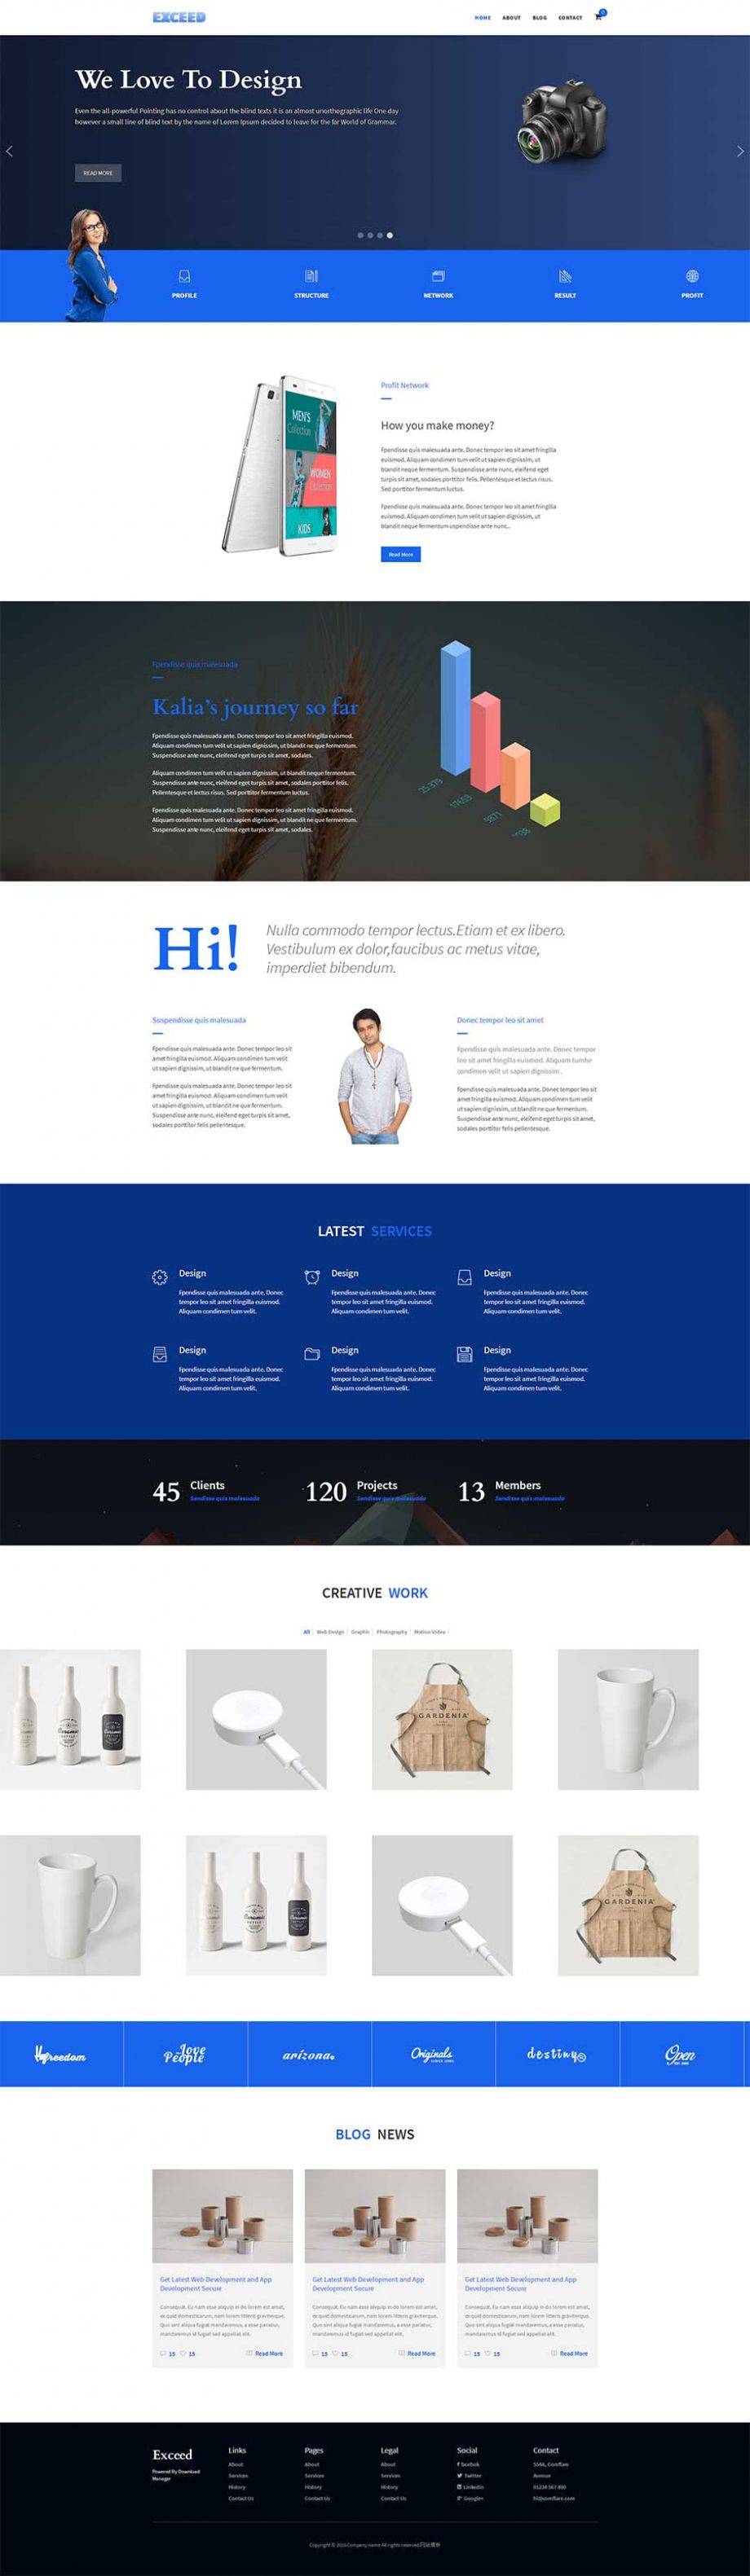 蓝色大气html5响应式UI设计公司网站模板